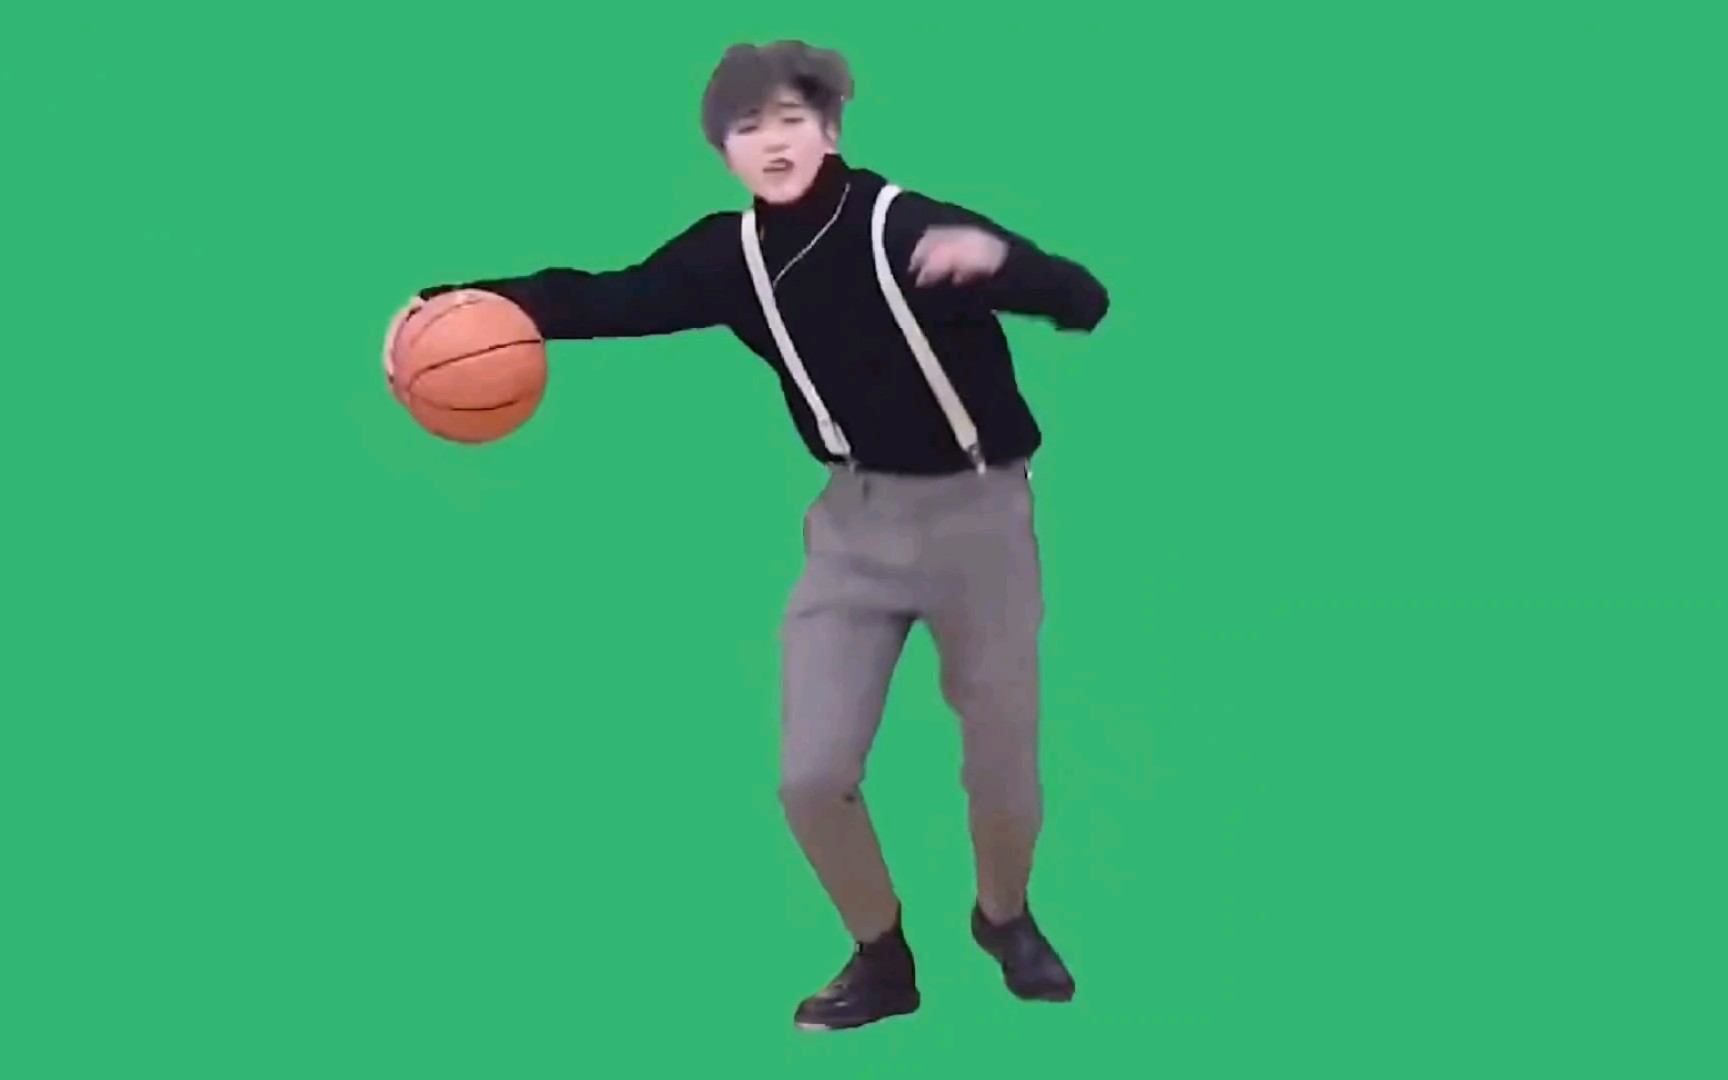 蔡徐坤打篮球息屏图片